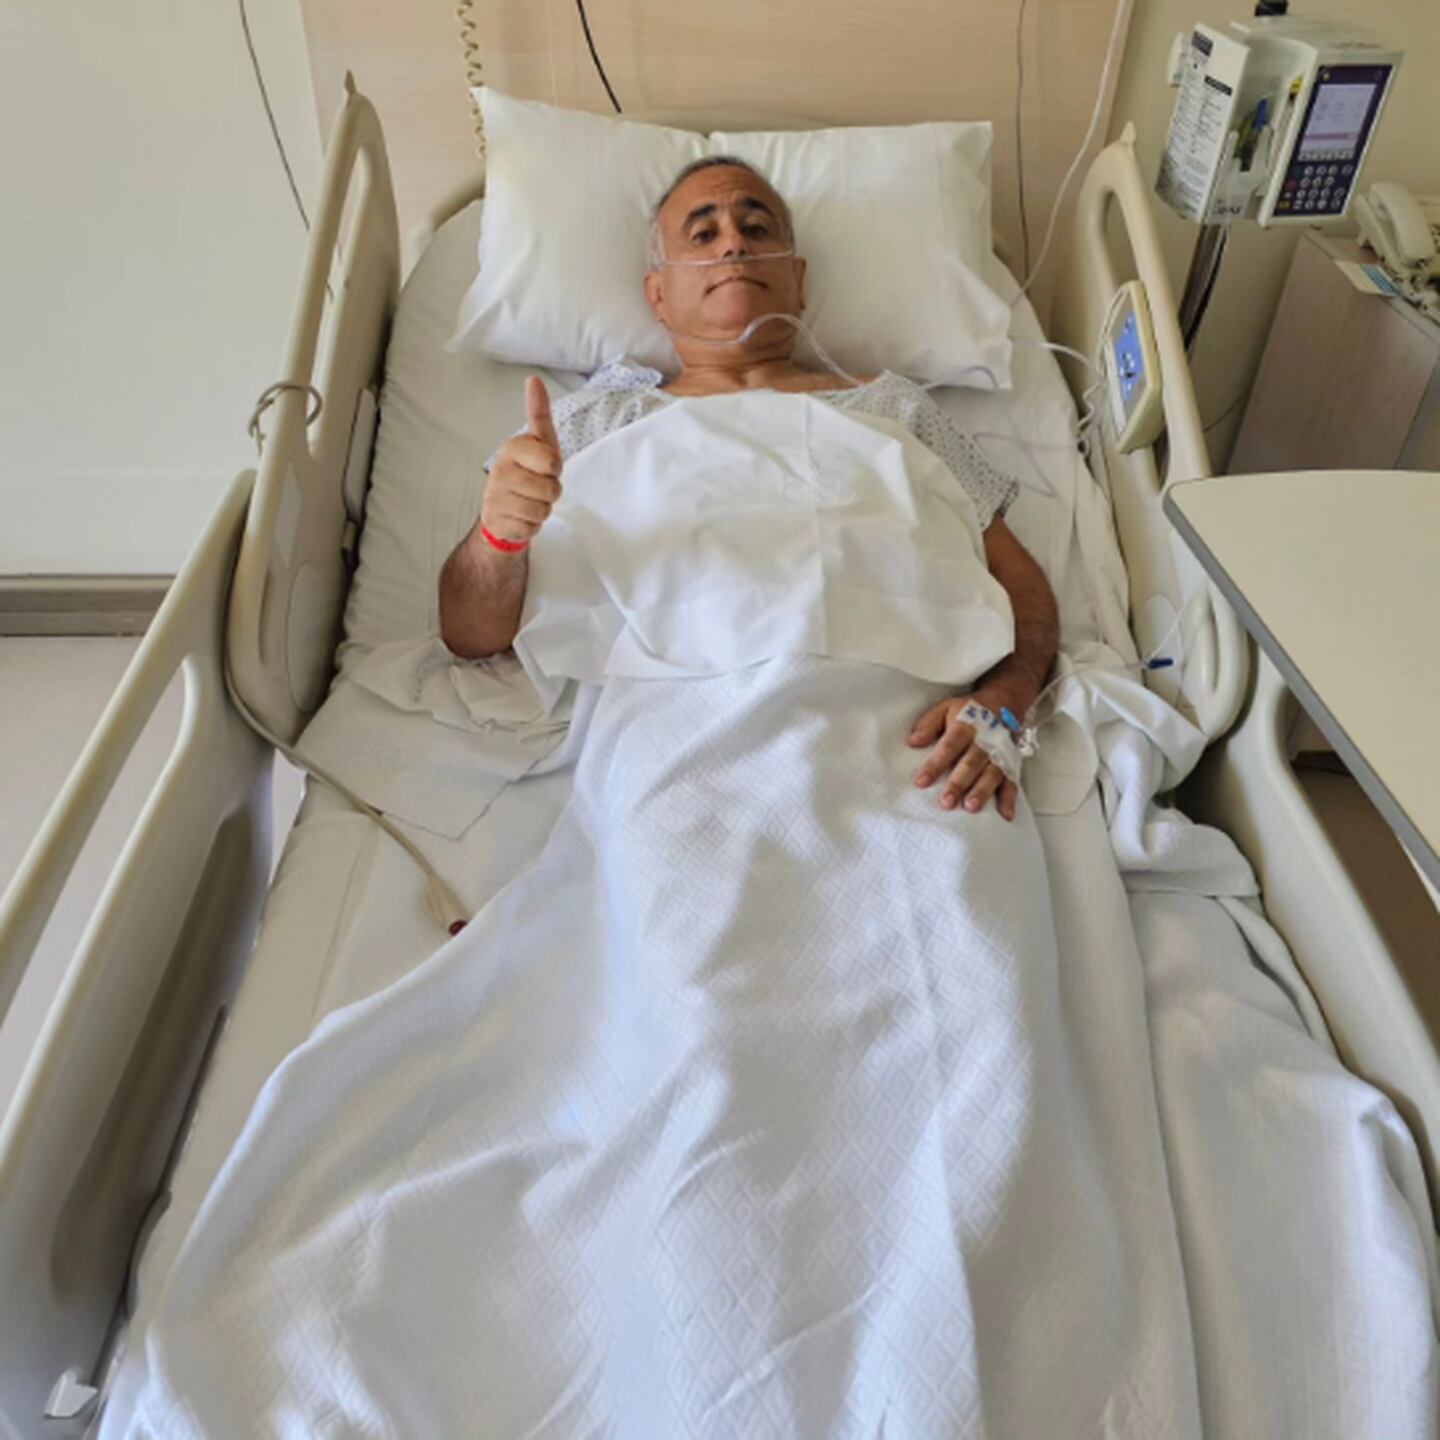 El profesional de la salud publicó en Instagram una serie de fotos entregando más detalles del resultado de su cirugía.